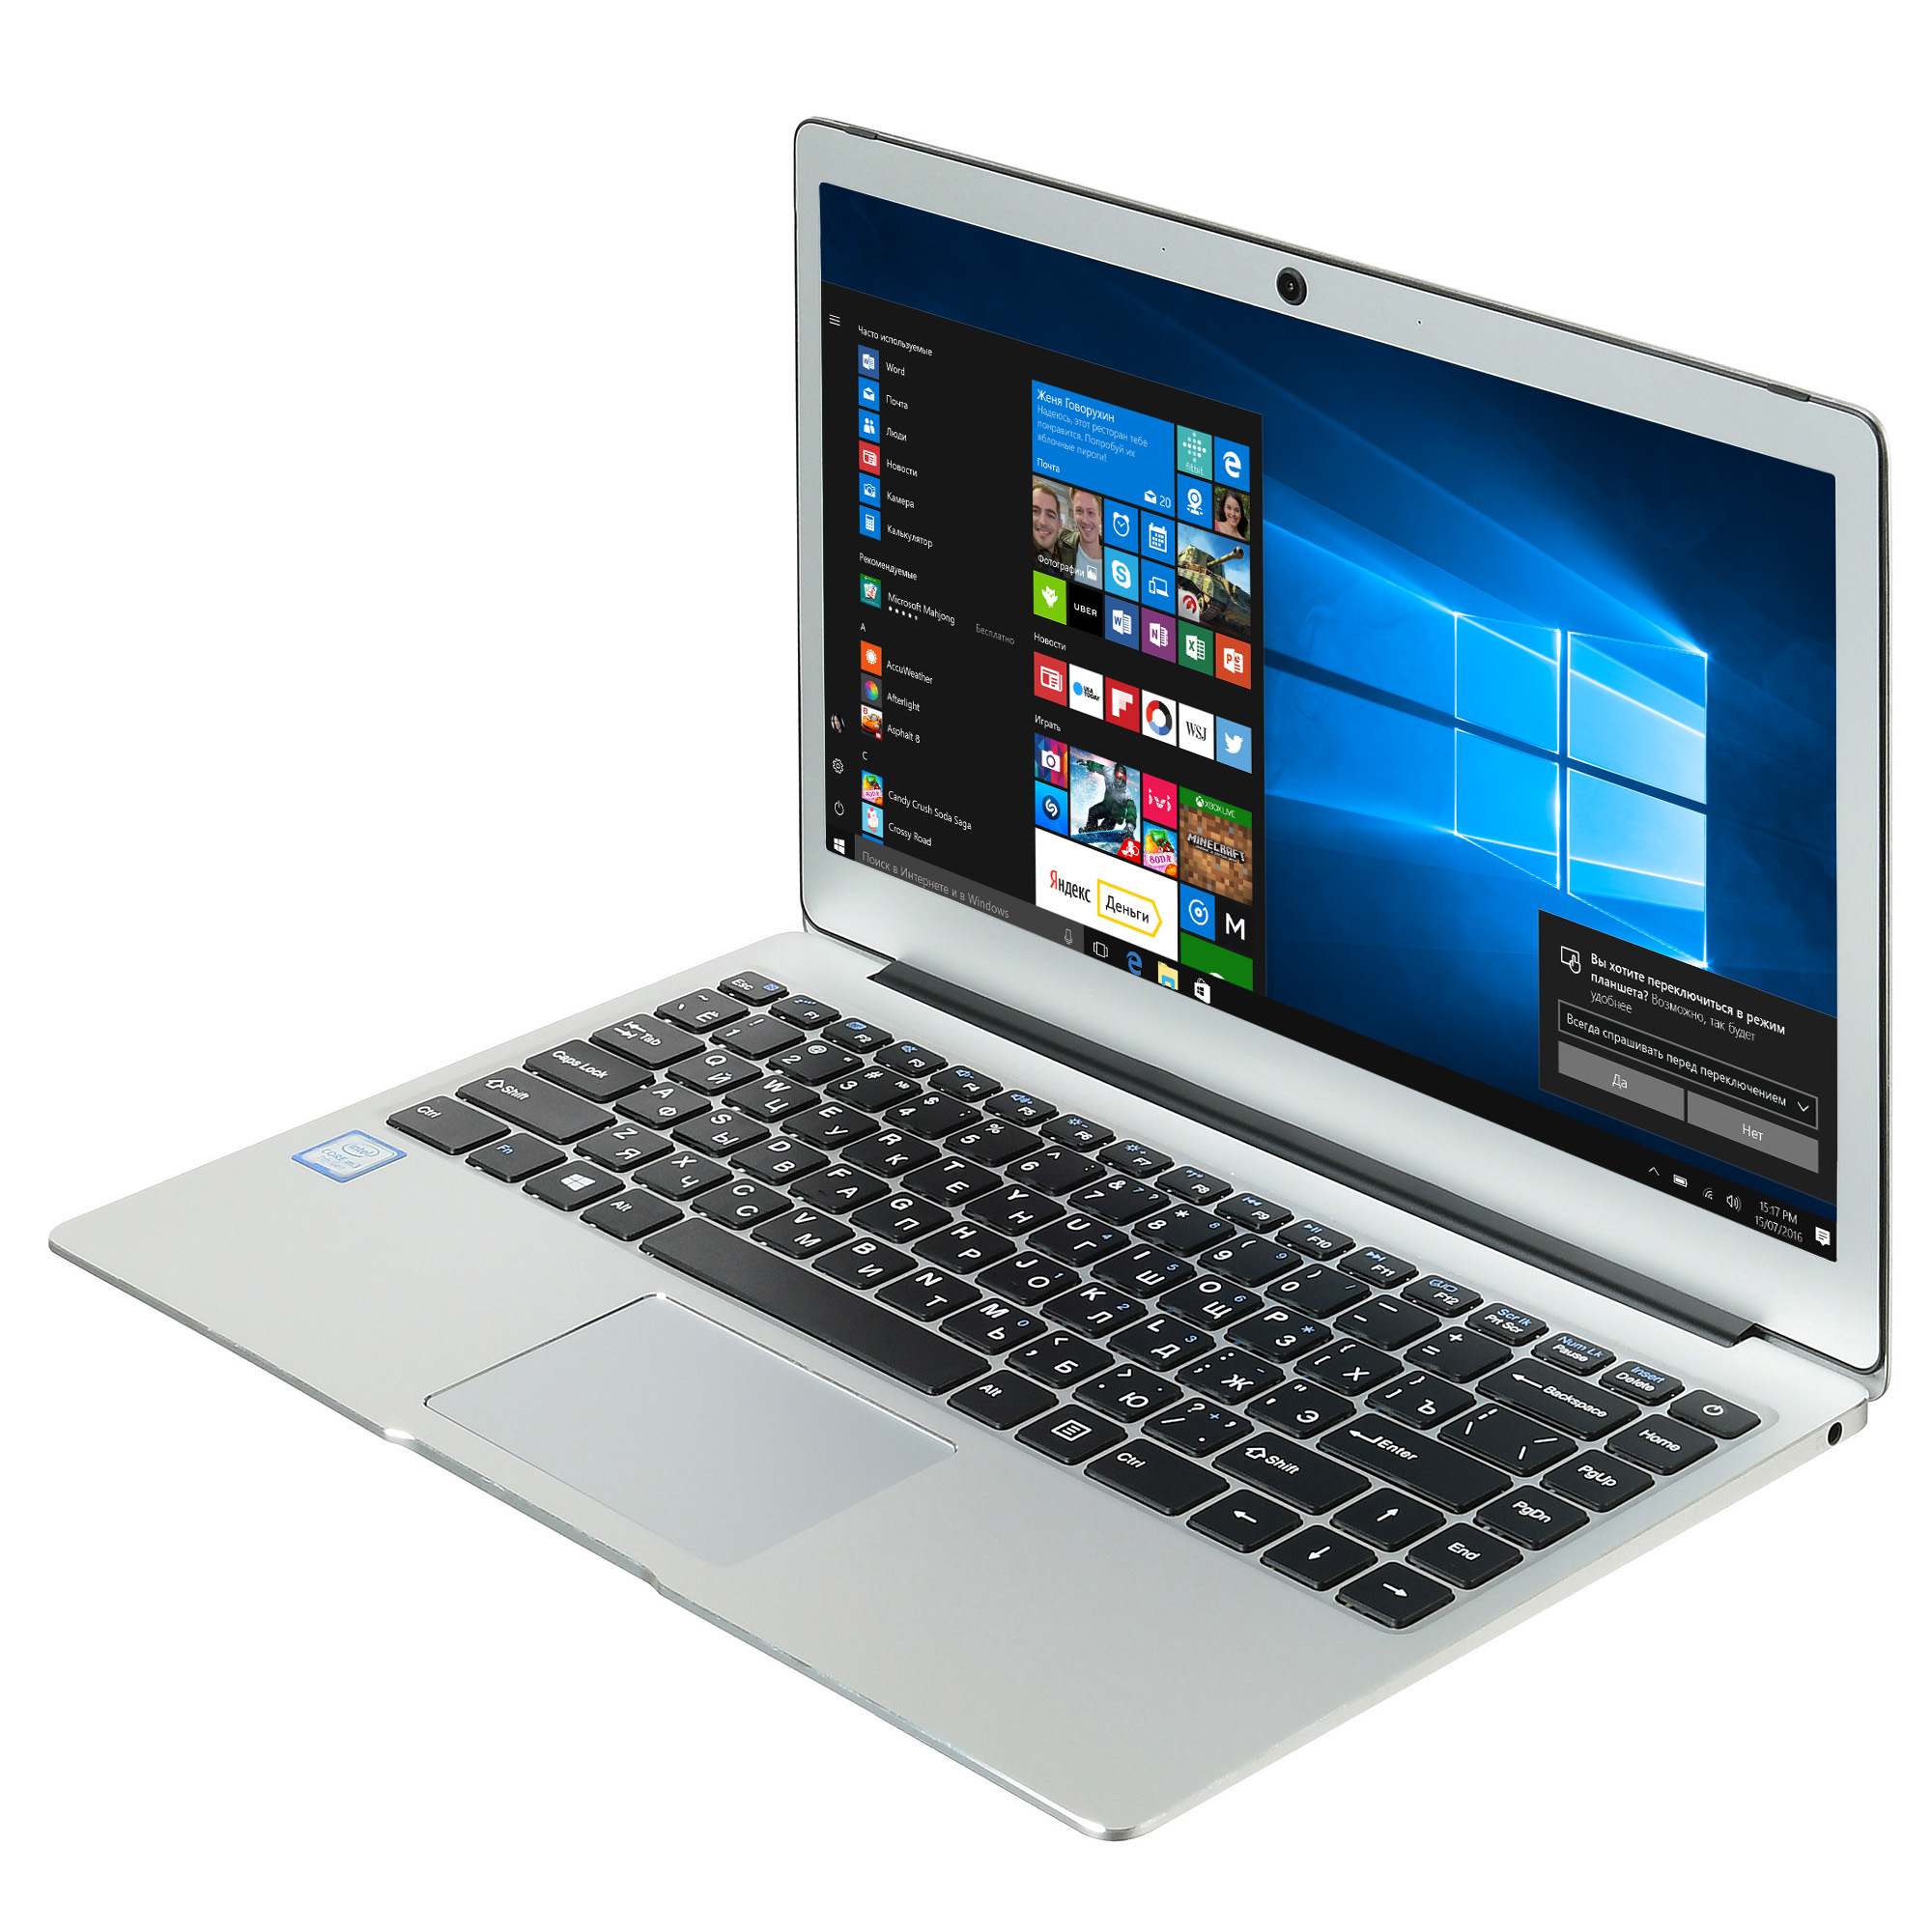 Недорогие ноутбуки для игр и учебы. Ноутбук Дигма. Ноутбук Digma Intel es6021ew. Ноутбук Digma за 10000 рублей. Digma 10 Windows ноутбук.